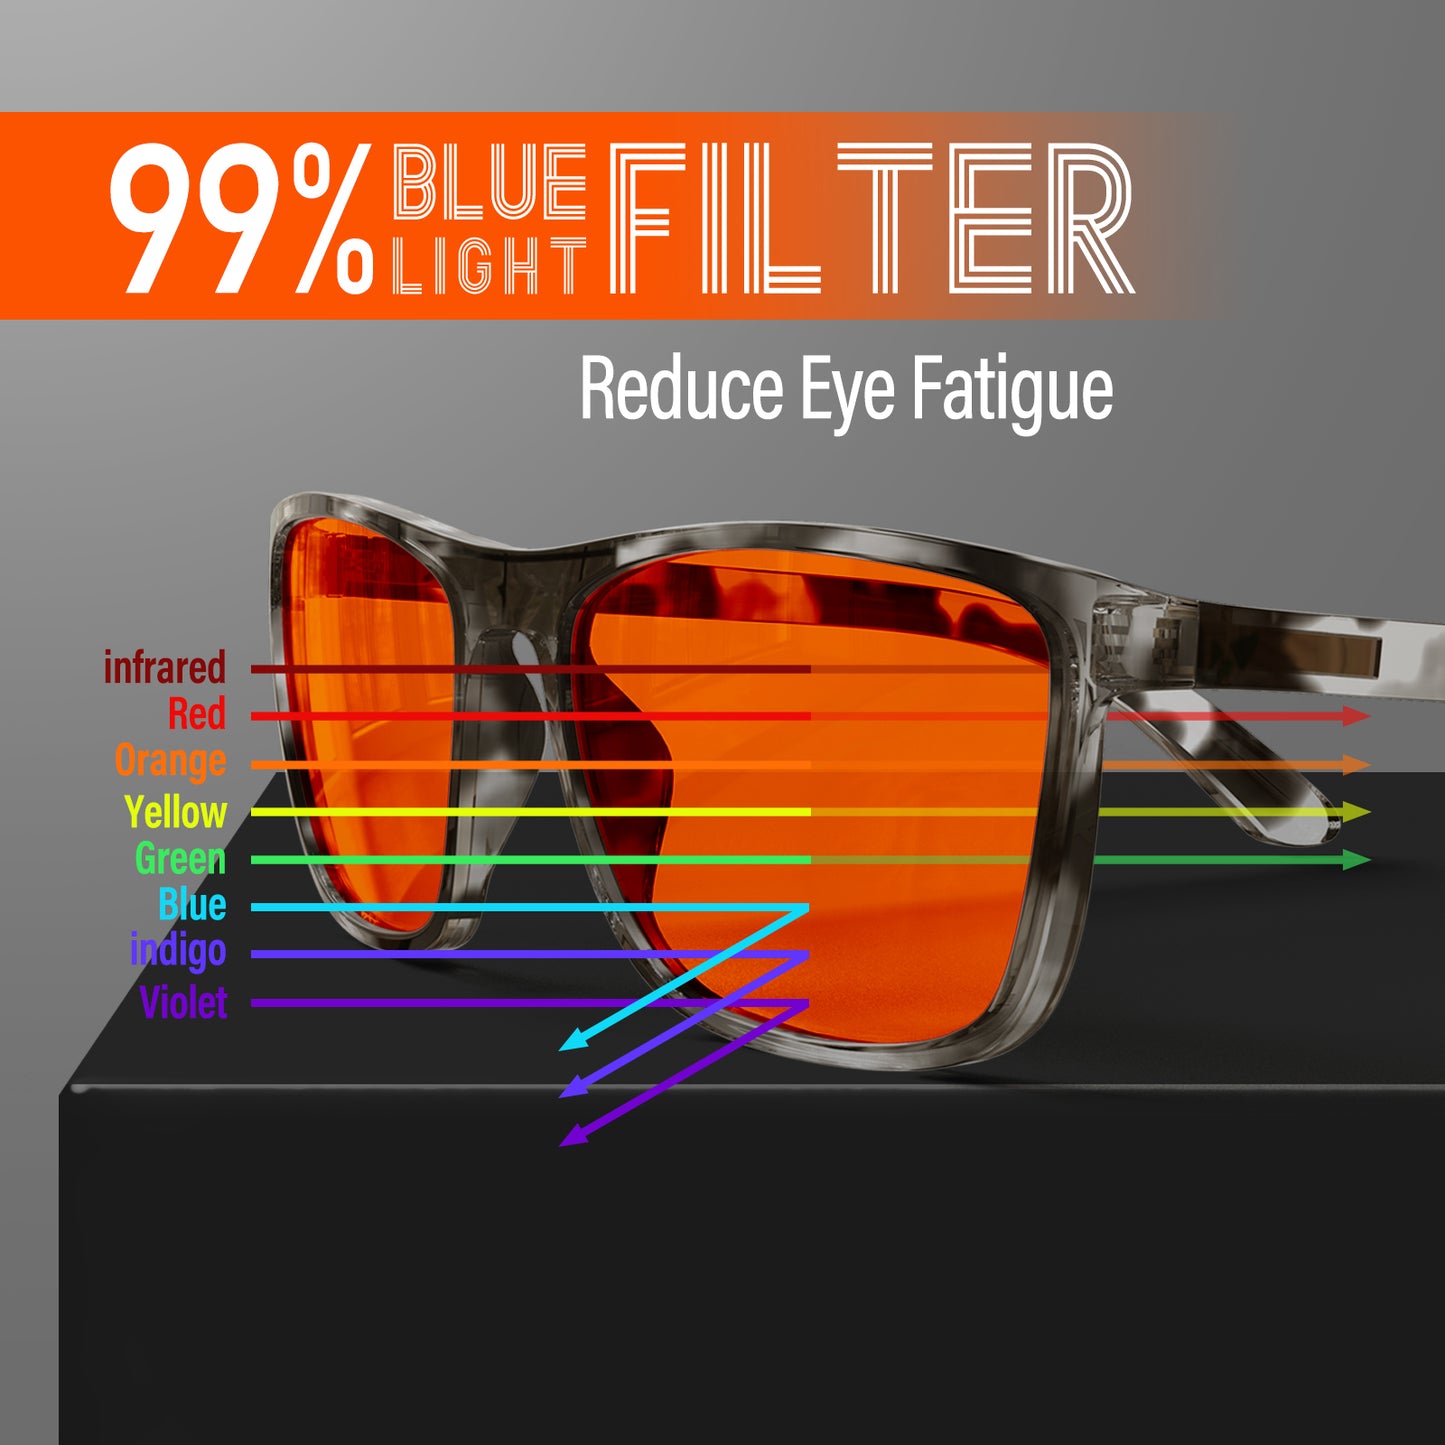 Bloomoak-99% Blue Light Blocking Glasses-Tortoiseshell